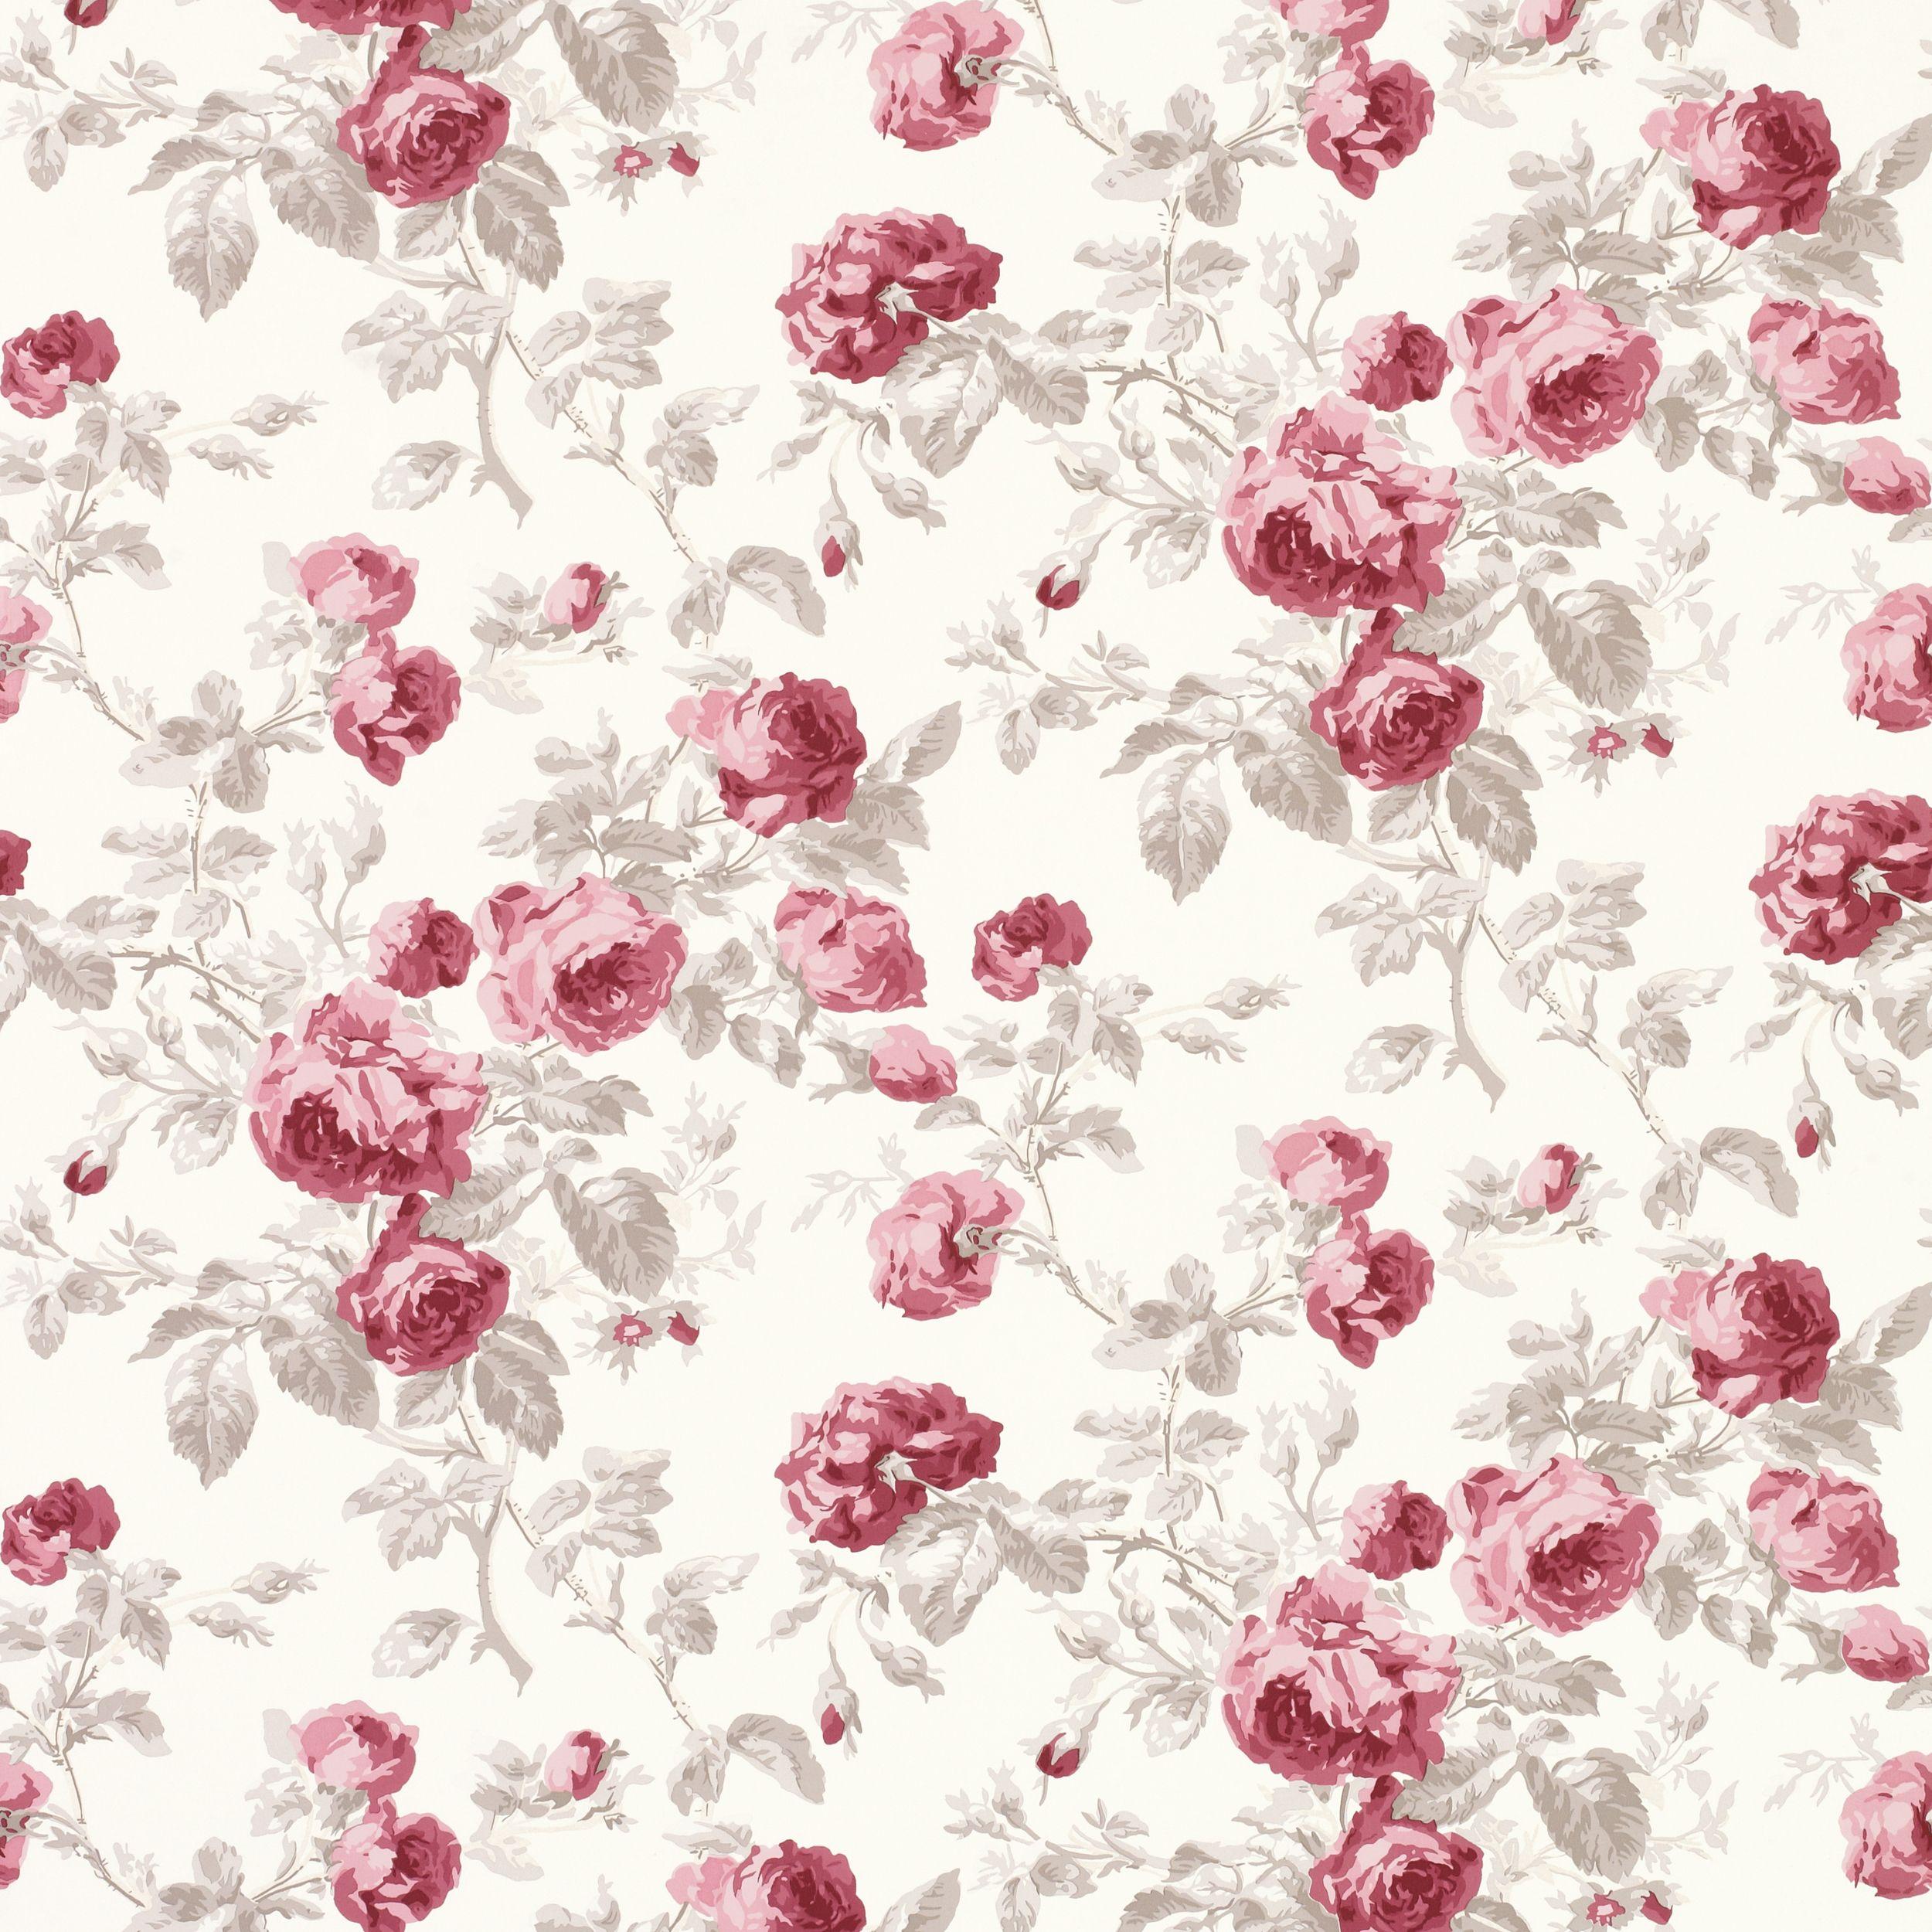 floral print desktop background